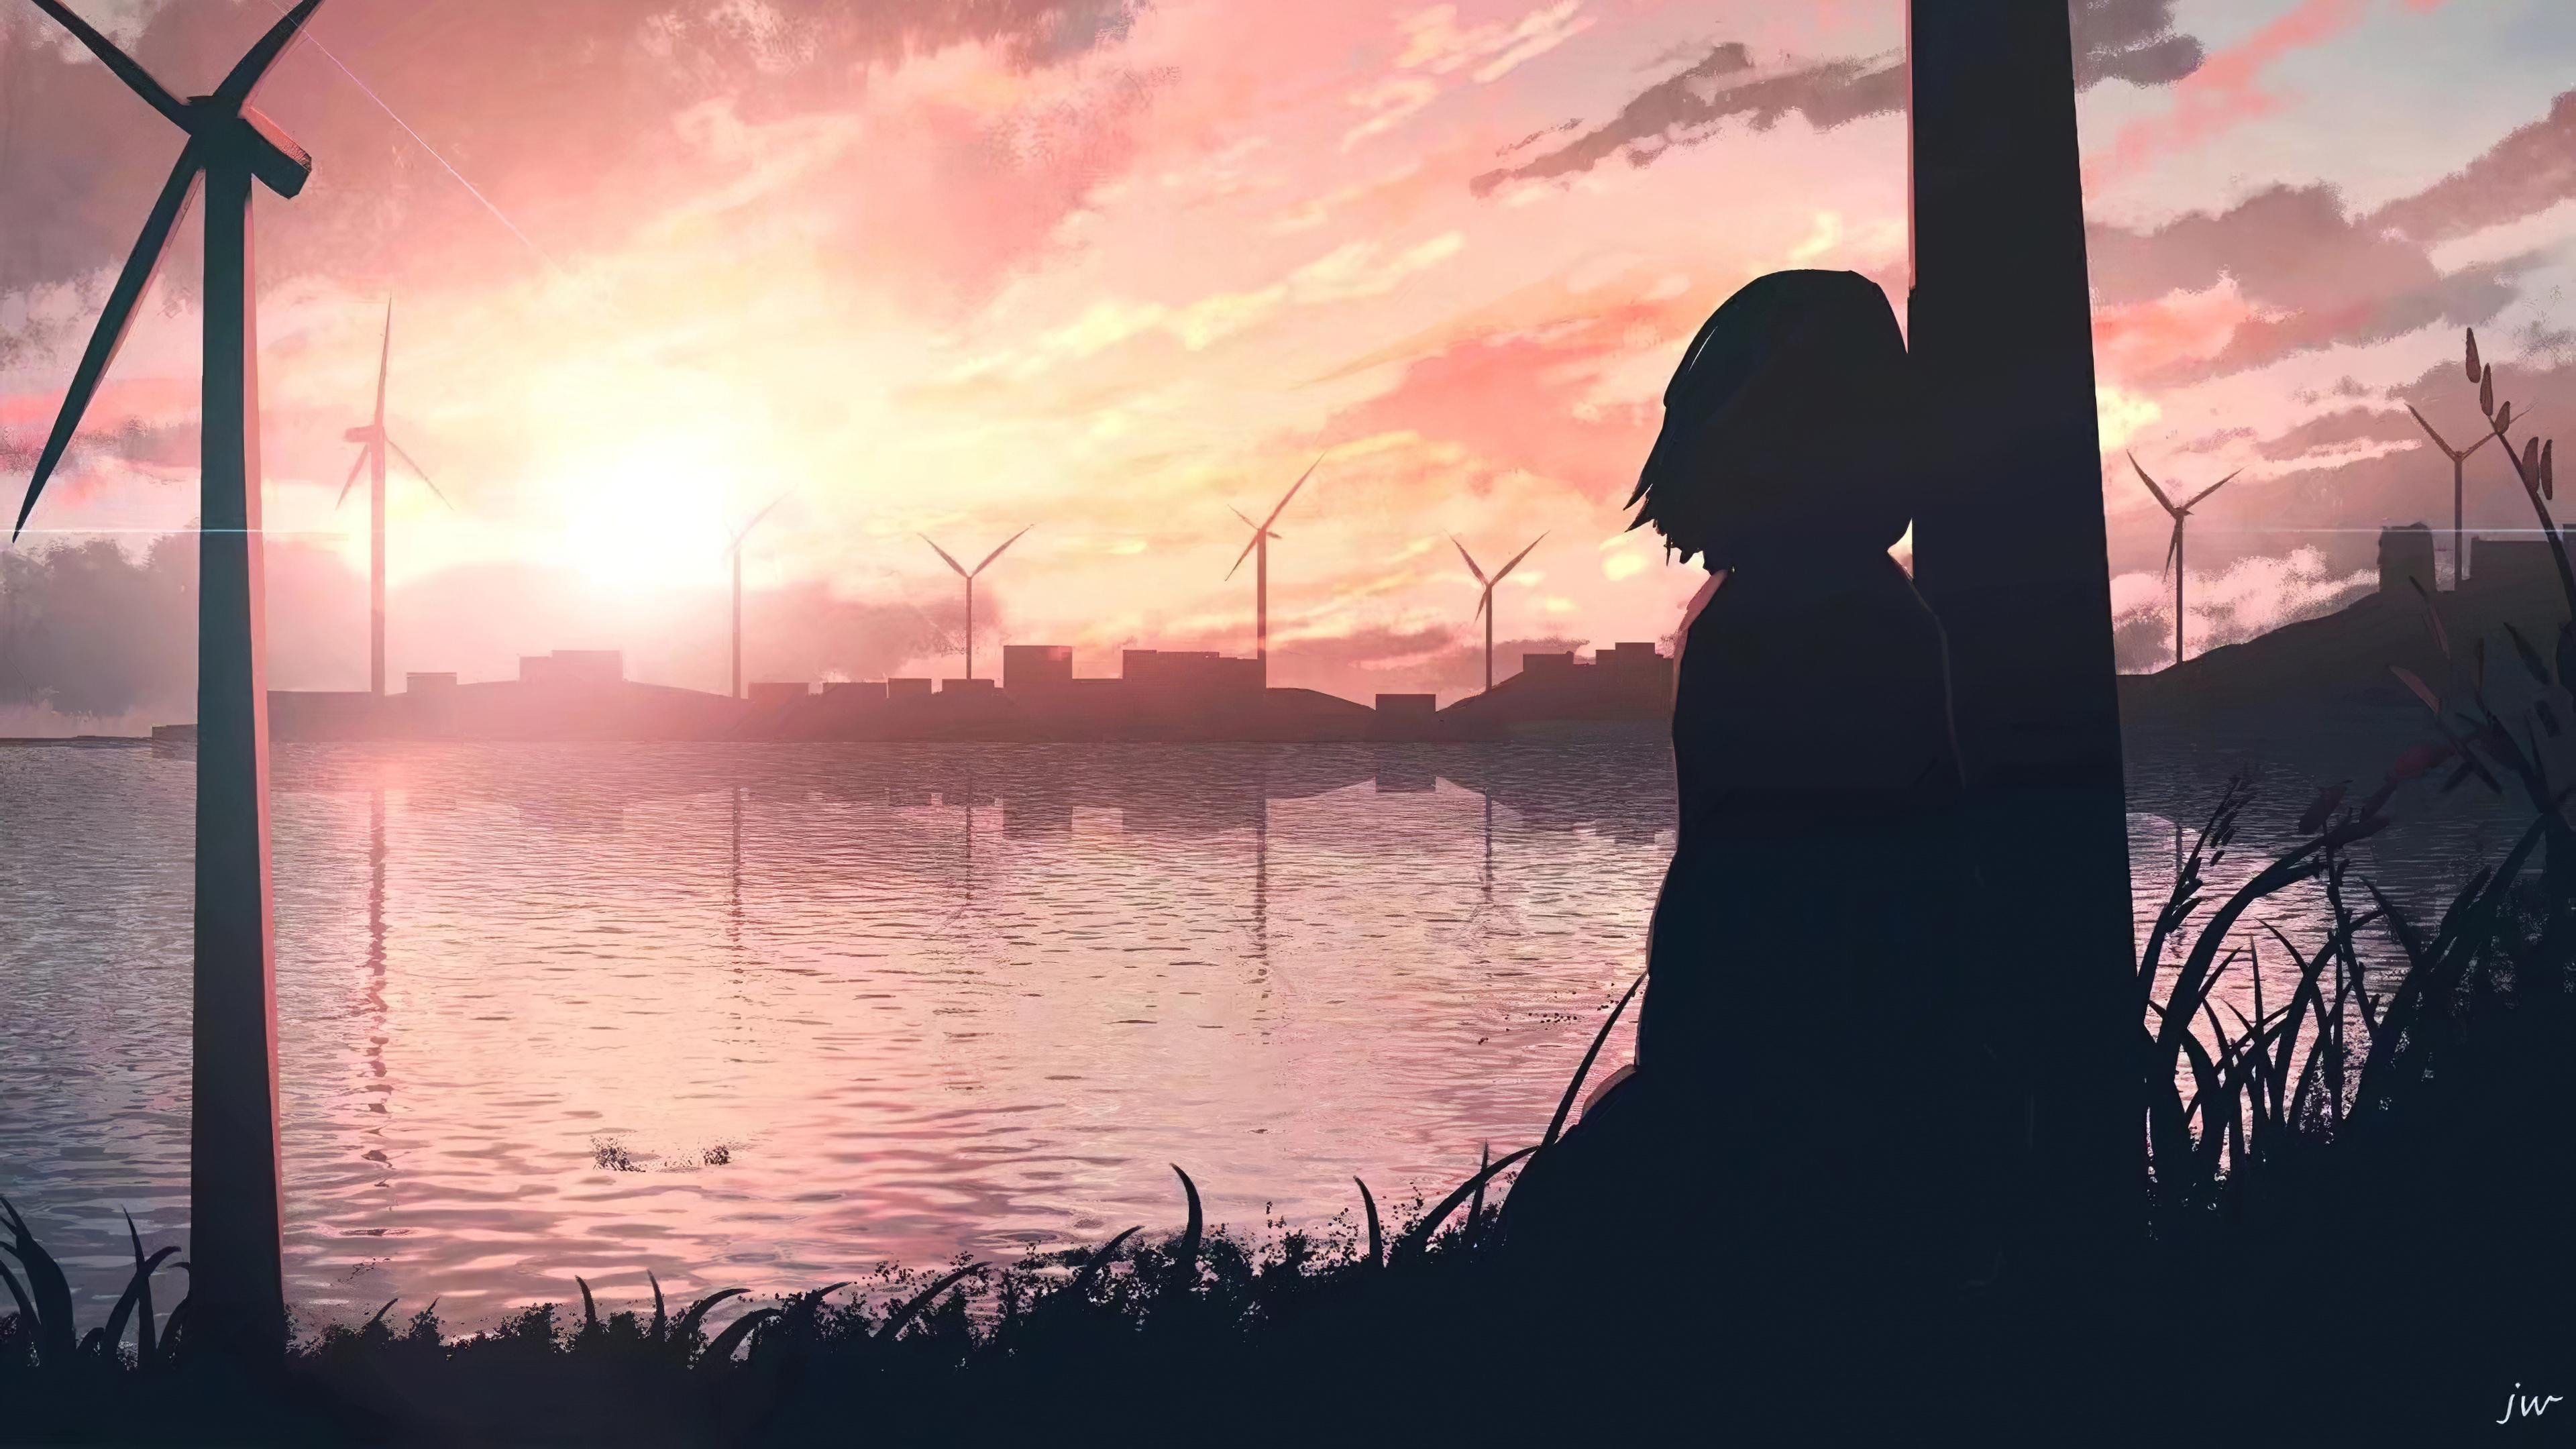 Sad Anime Girl 4k, HD Anime, 4k Wallpapers, Image, Backgrounds